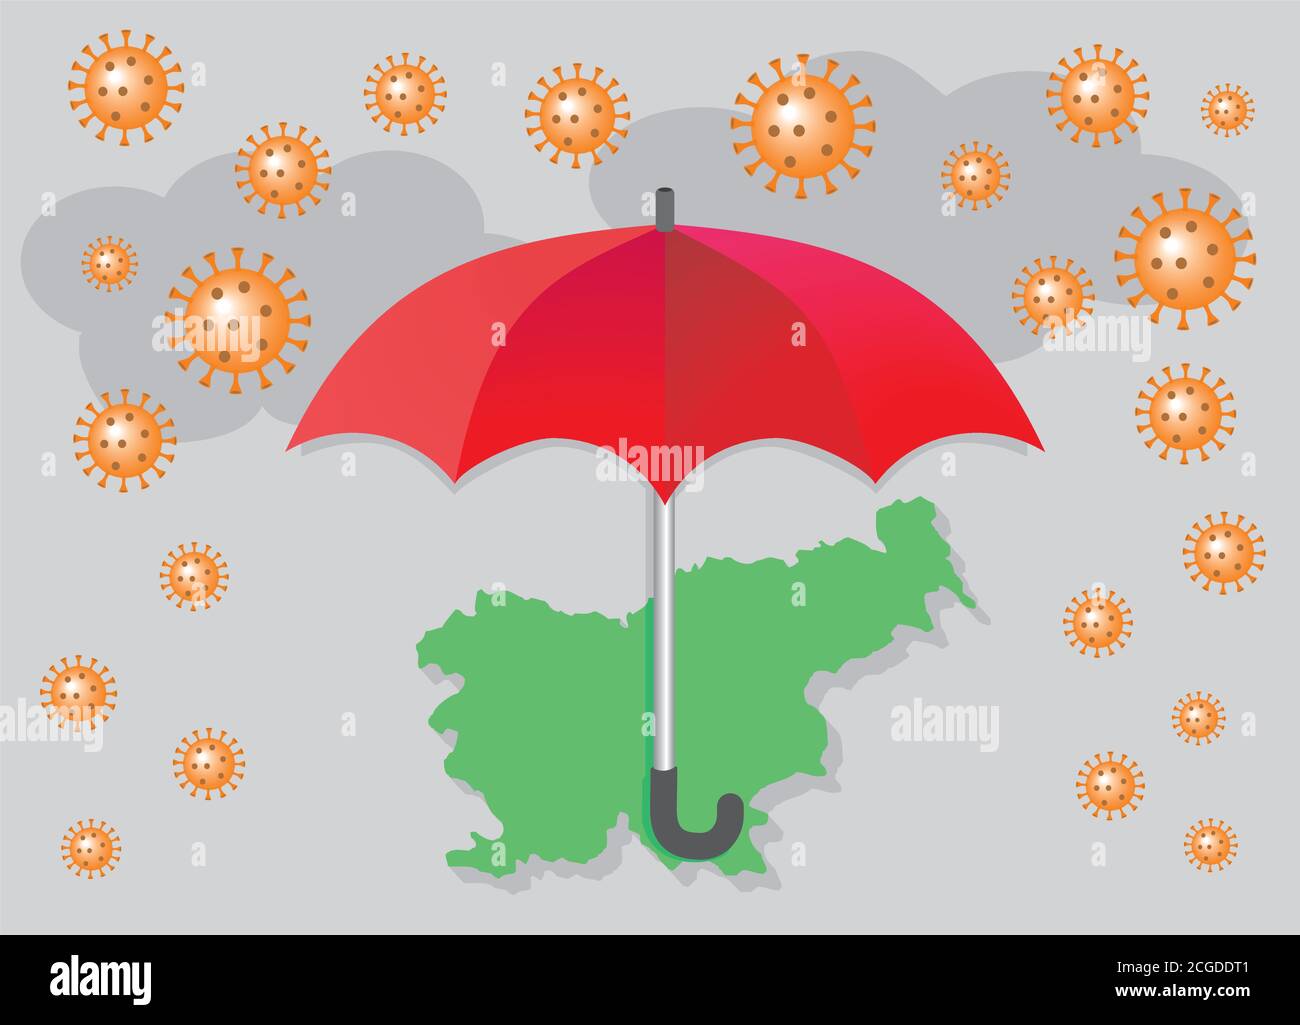 Roter Regenschirm schützt Slowenien vor einer Corona-Virus-Pandemie.  Vektorgrafik. EPS10 Stock-Vektorgrafik - Alamy